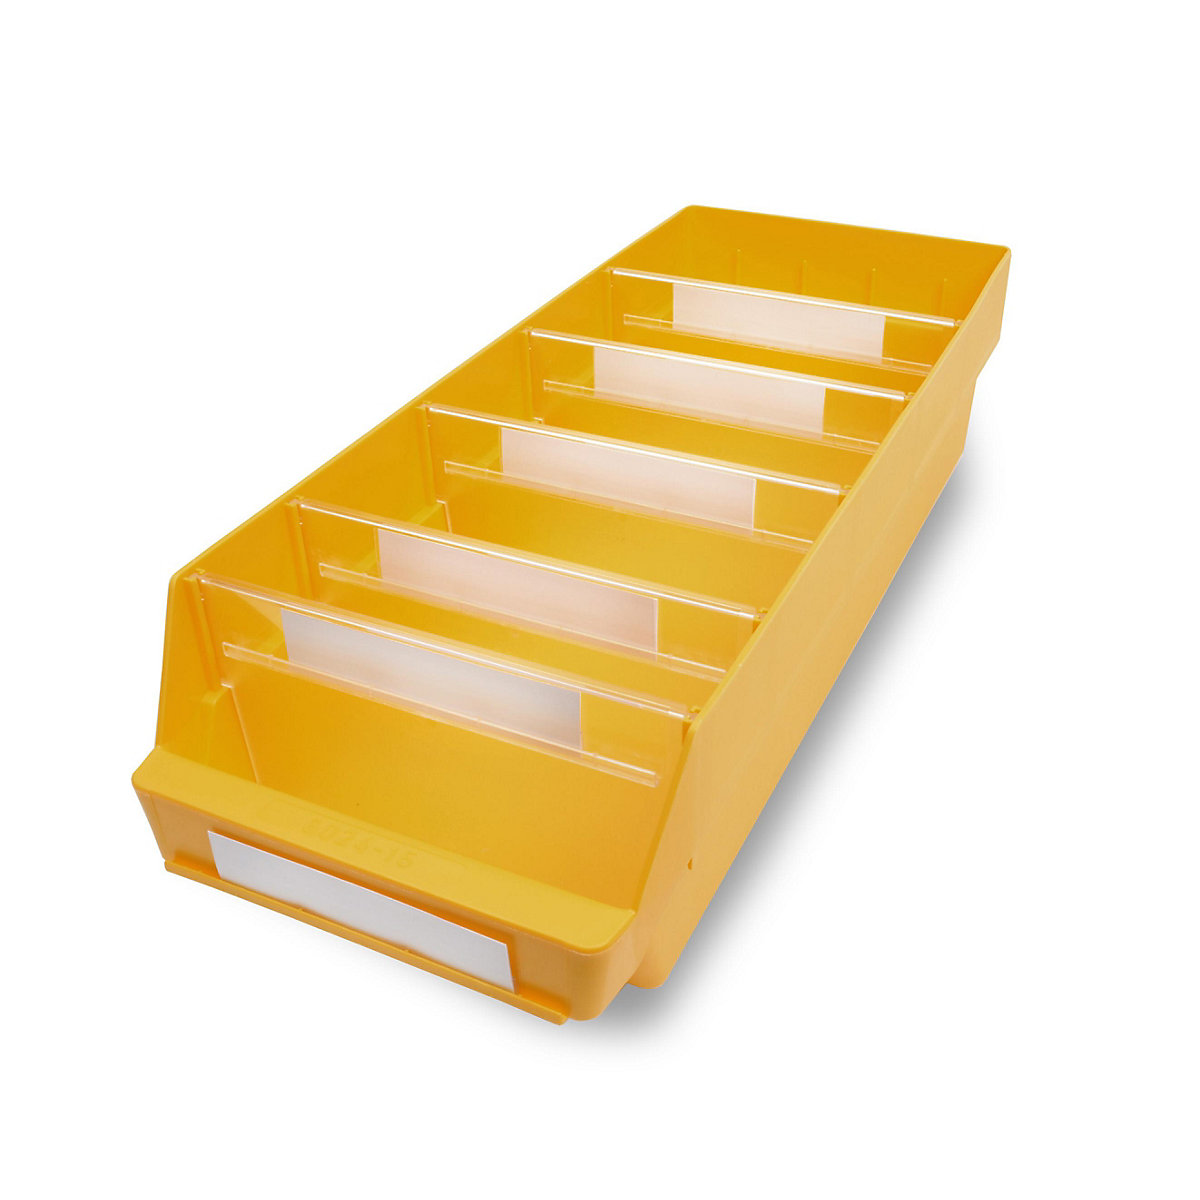 STEMO Regalkasten aus hochschlagfestem Polypropylen, gelb, LxBxH 600 x 240 x 150 mm, VE 10 Stk